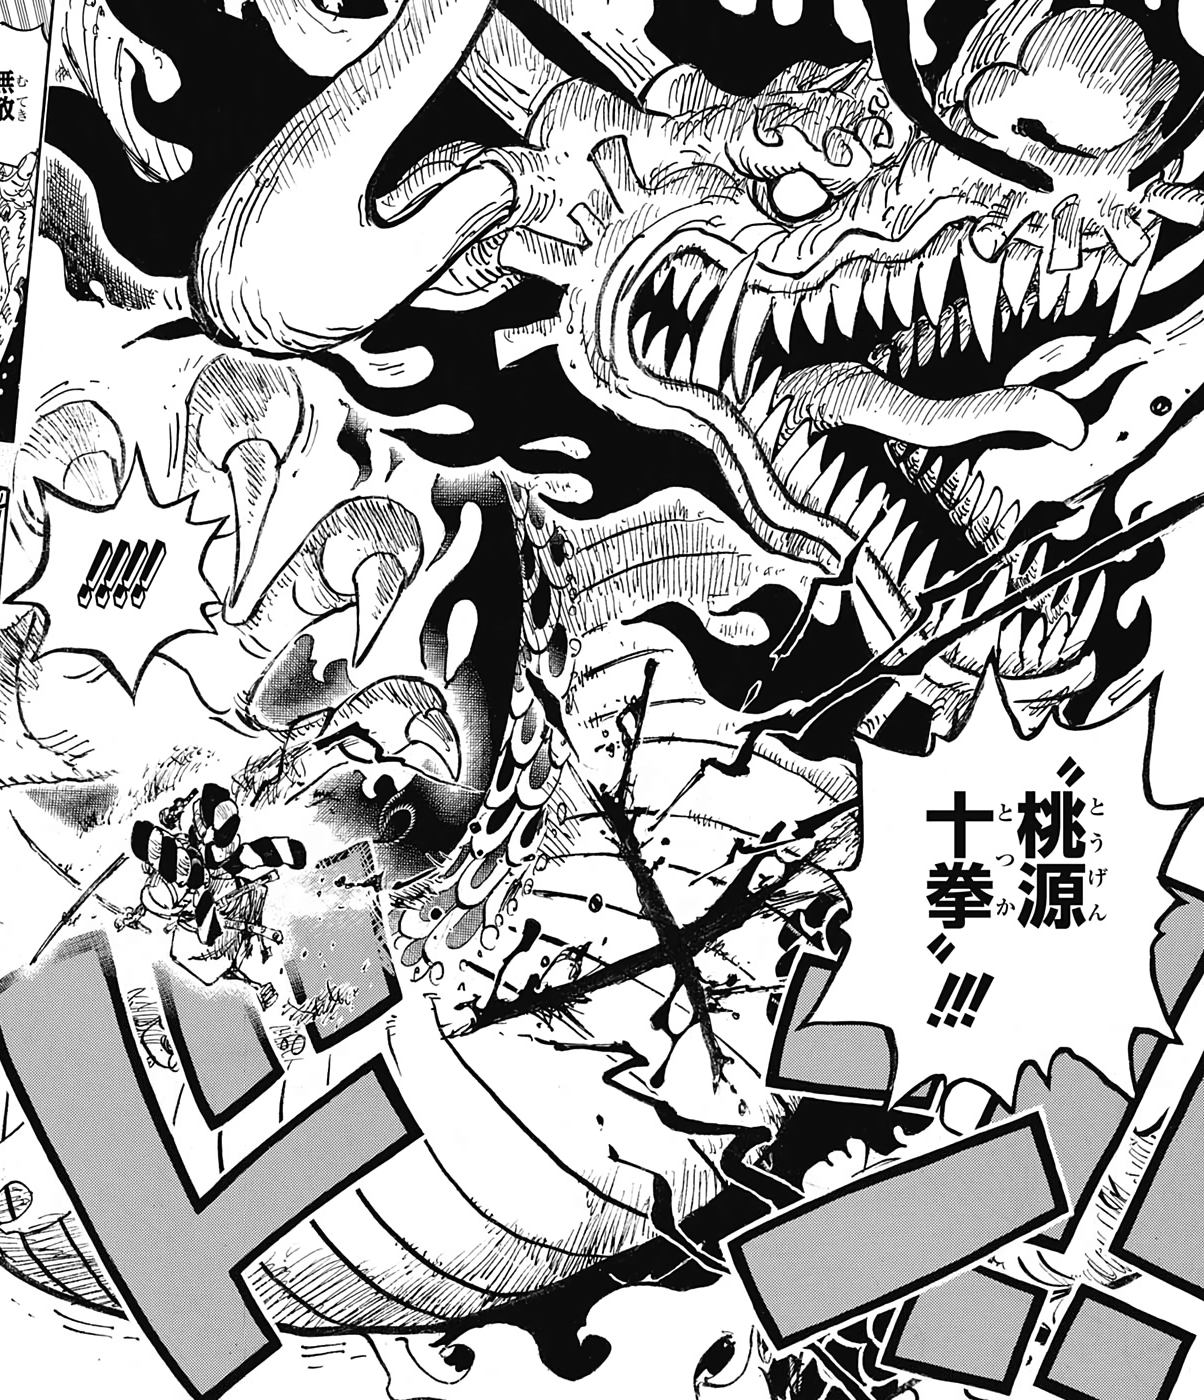 Ame no Habakiri - một thanh kiếm huyền thoại trong One Piece. Hãy xem hình ảnh của nó để khám phá những bí mật đằng sau chiếc thanh kiếm đáng sợ này, với khả năng đánh bại bất kỳ kẻ thù nào.